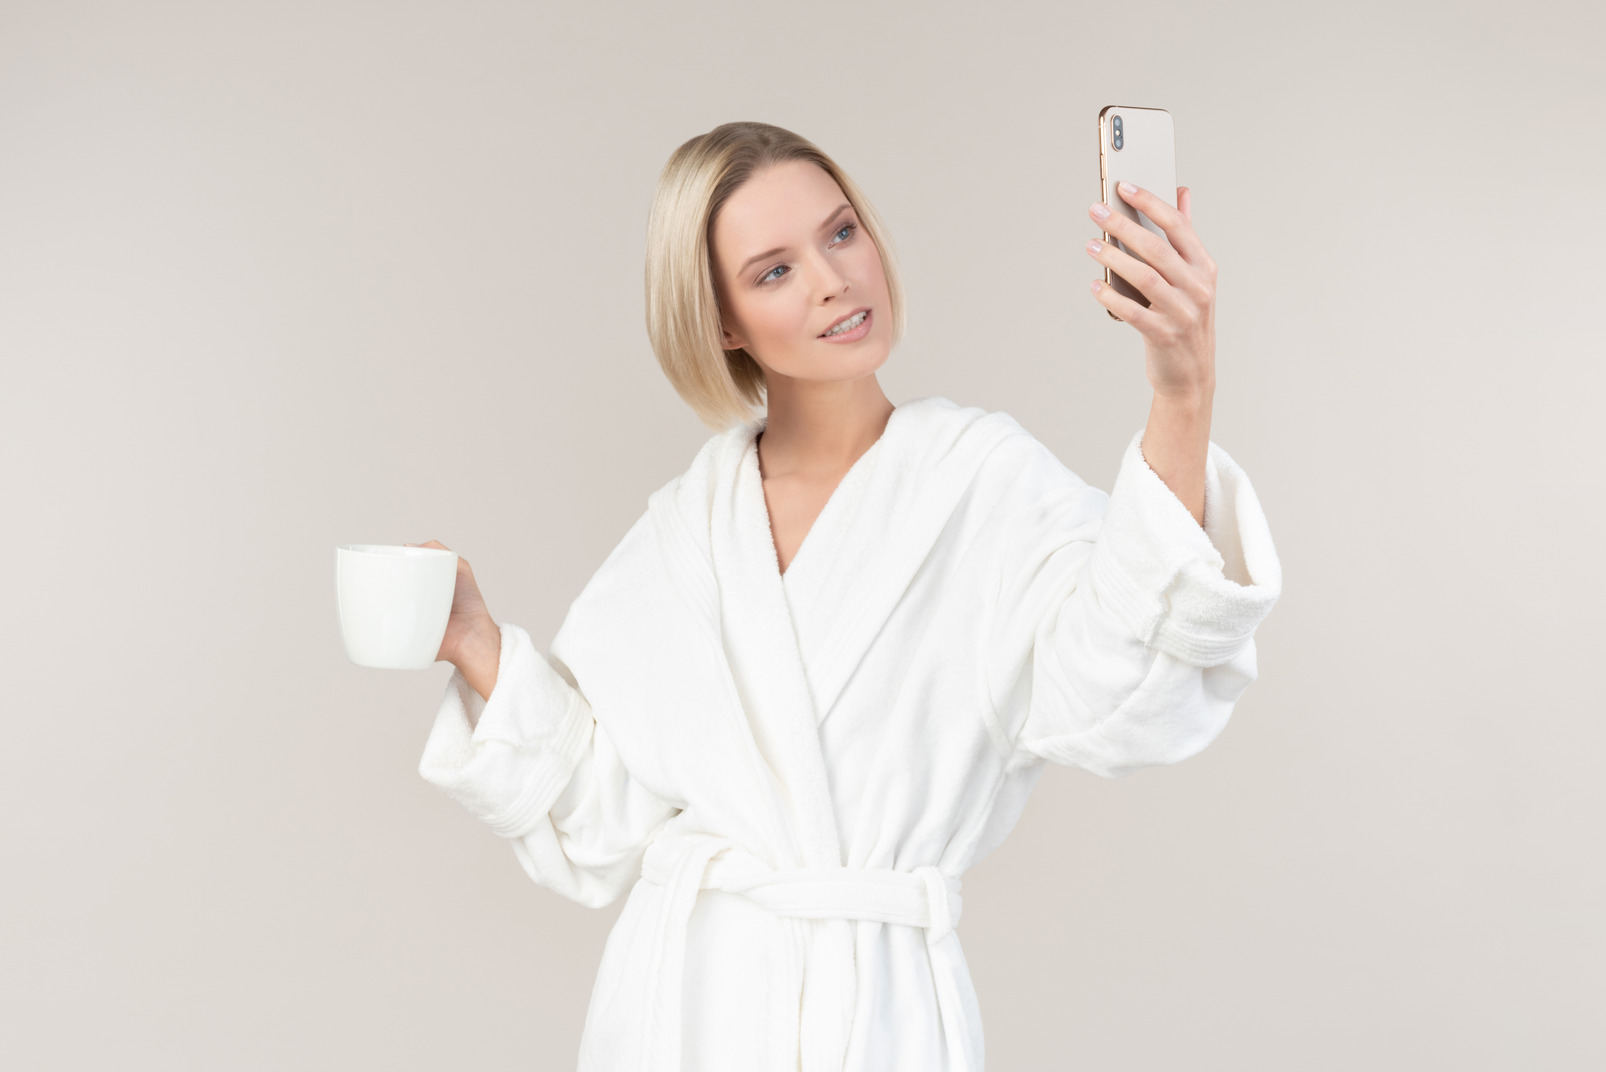 Young girl holding mug and smartphone